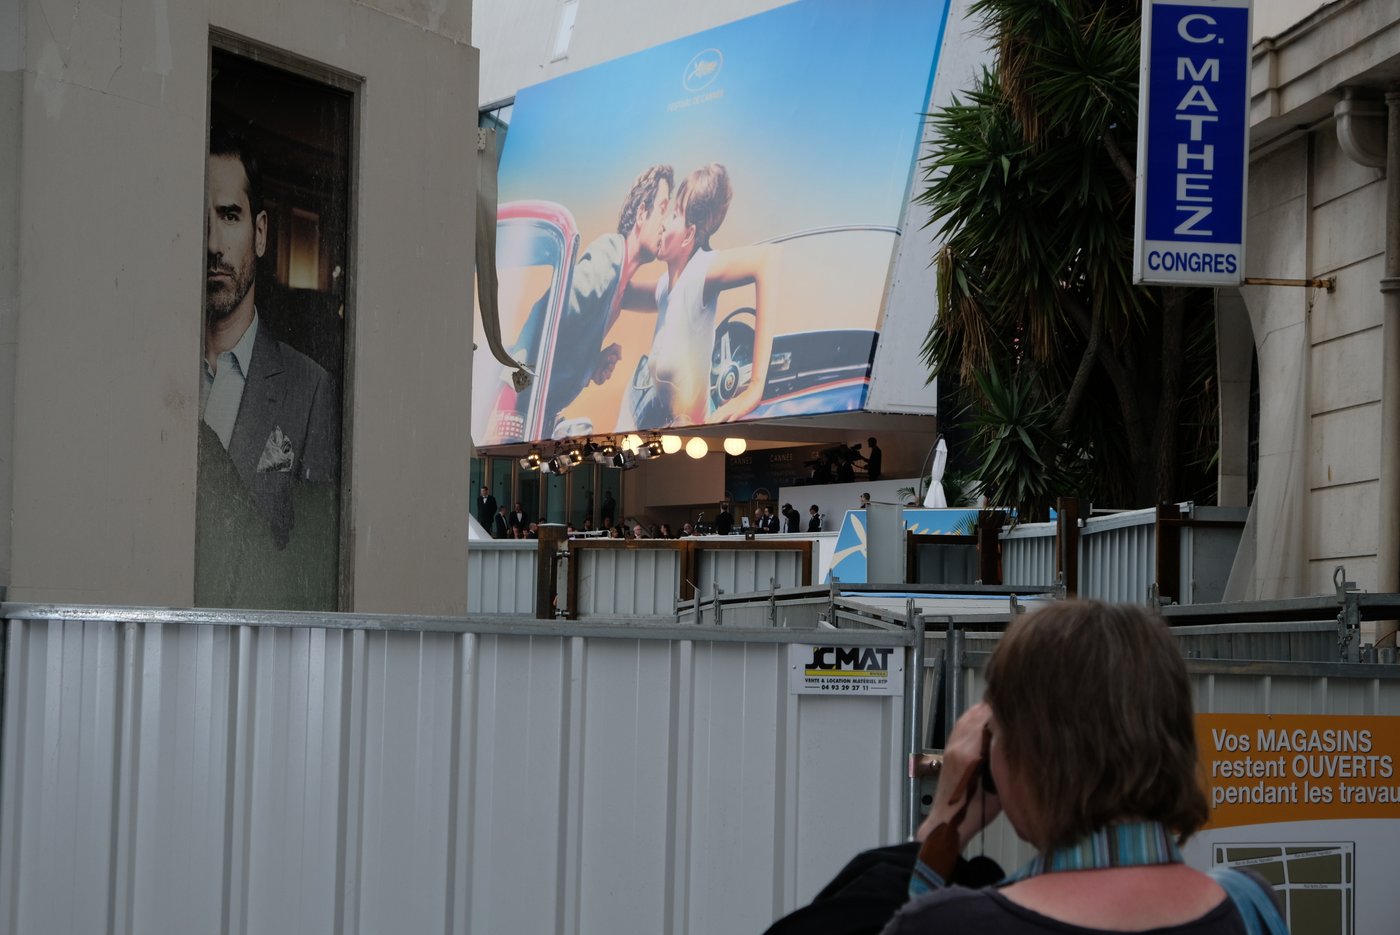 Cannes se fait une beauté, pendant les travaux la vente continue